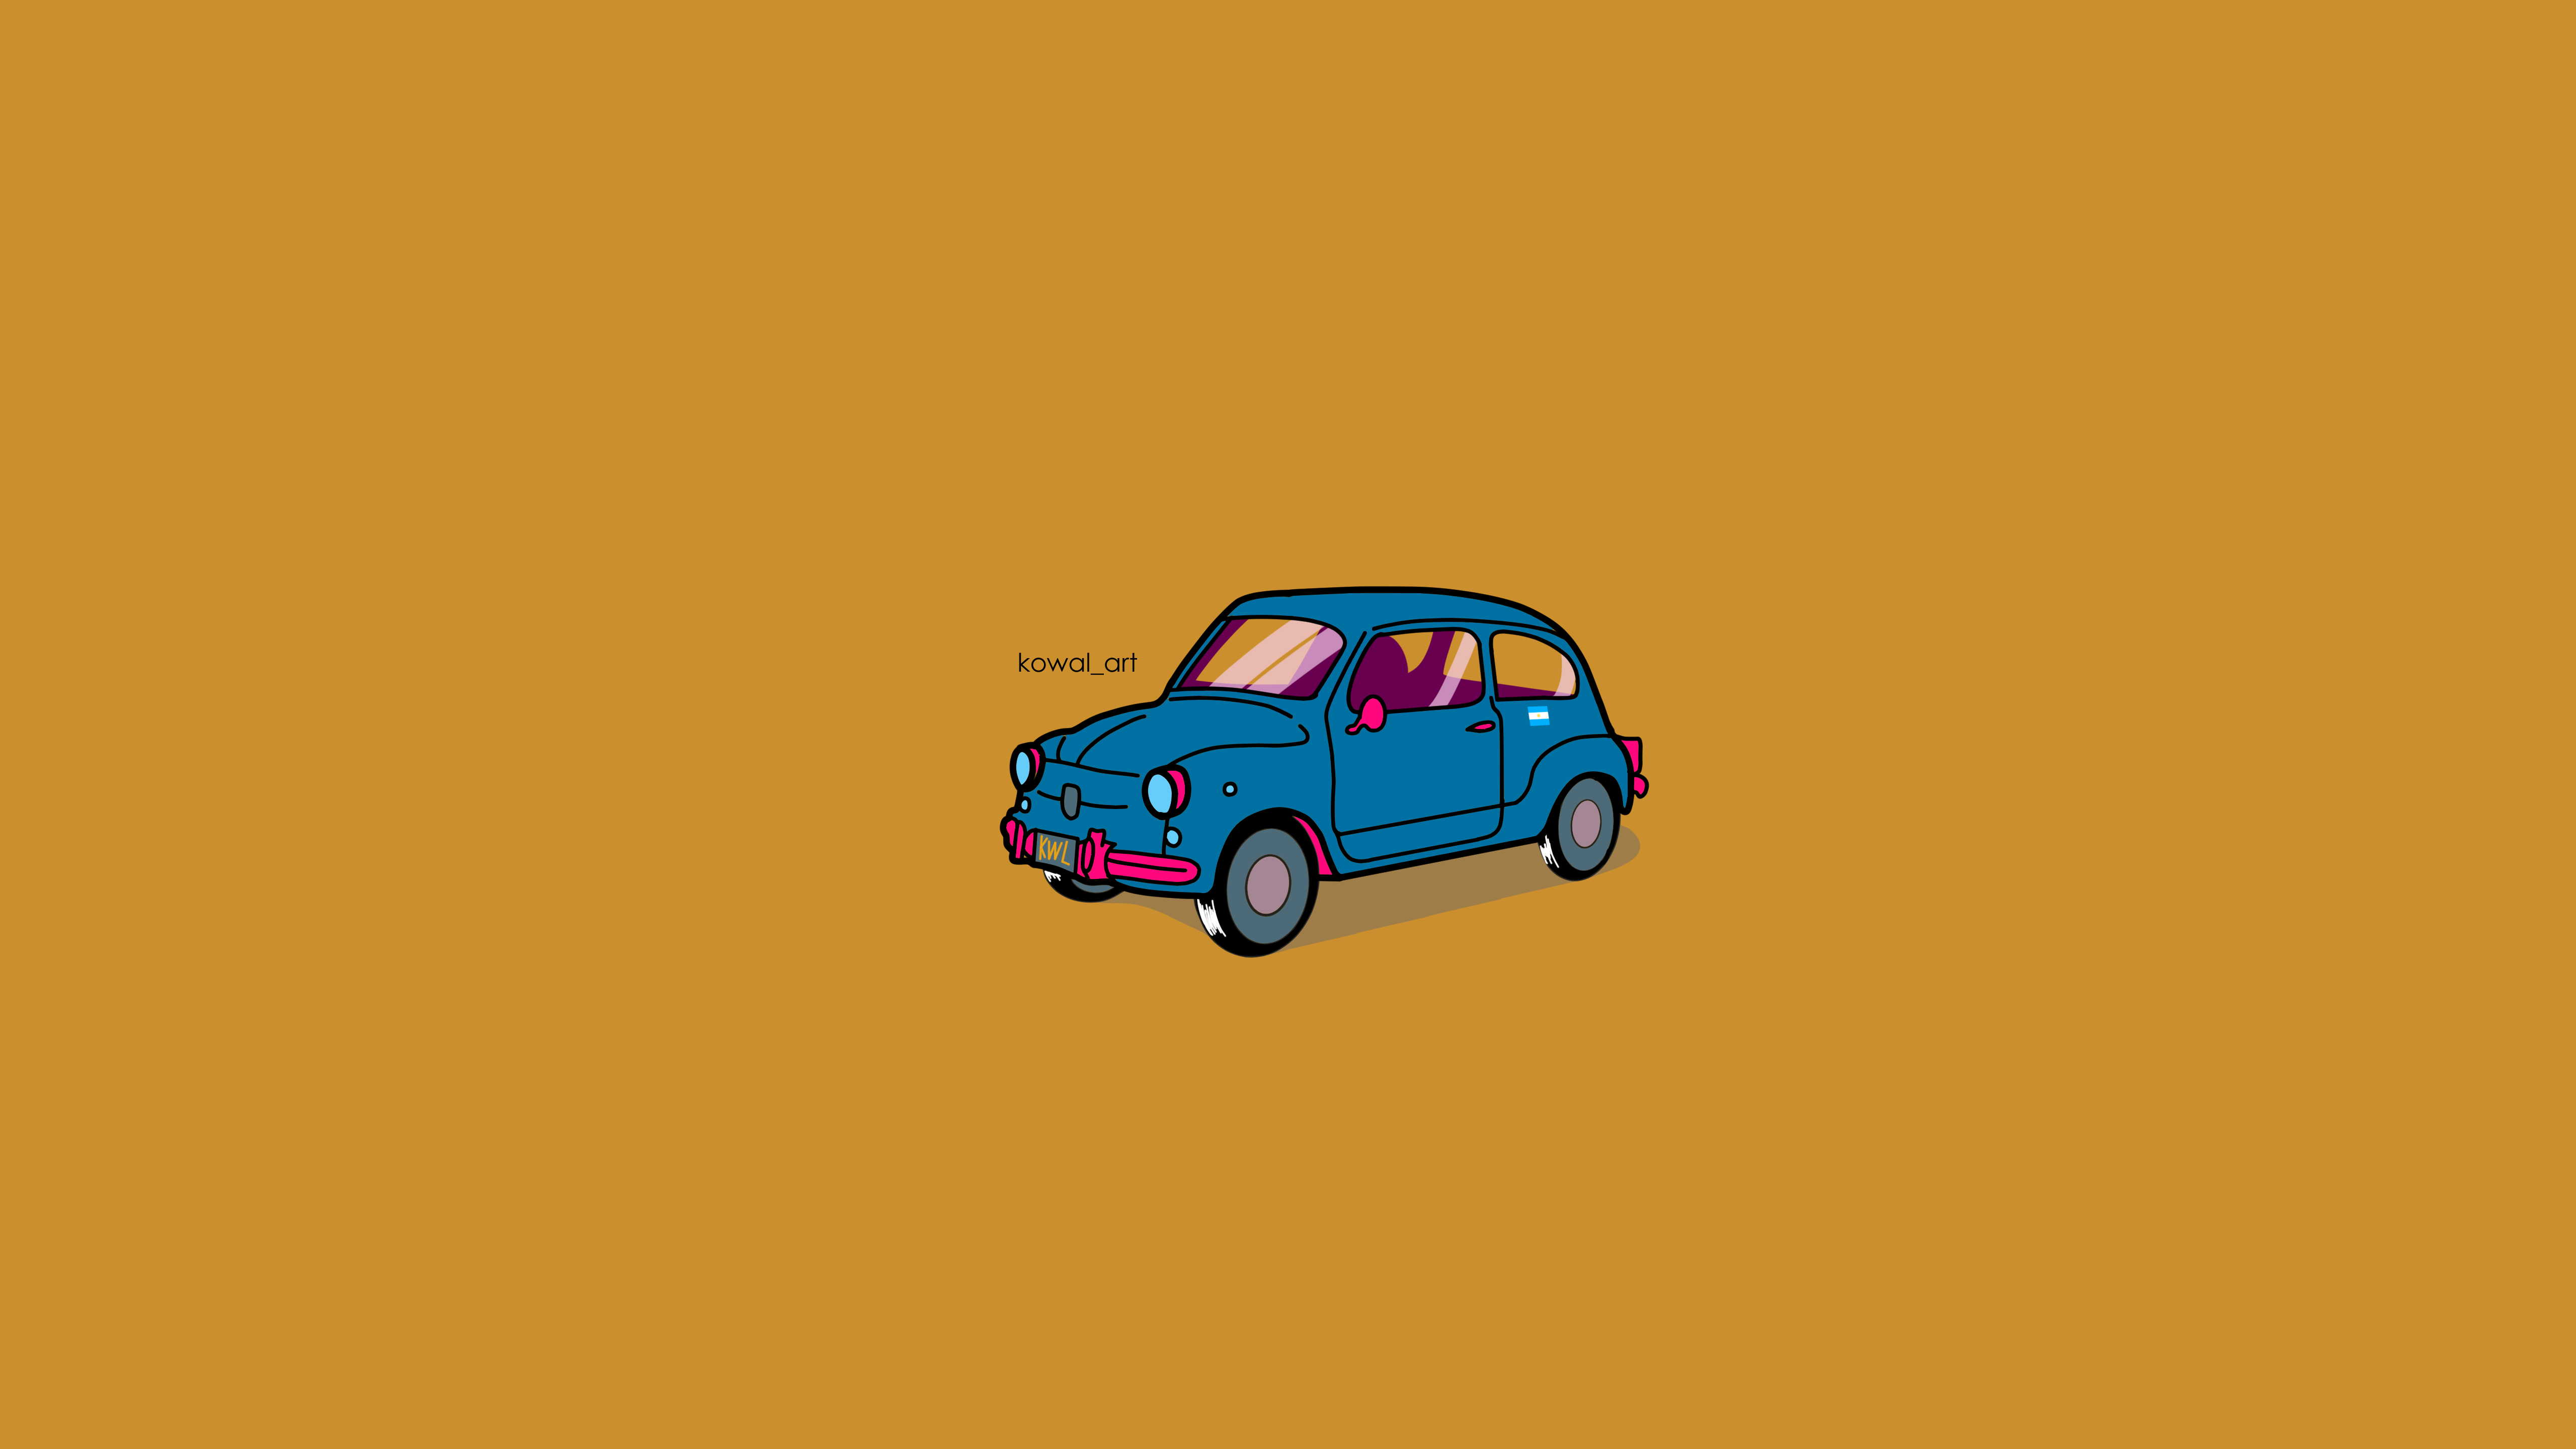 Car FiAT Fiat 600 Minimalism KowalArt Argentina Wallpaper -  Resolution:5120x2880 - ID:1274690 